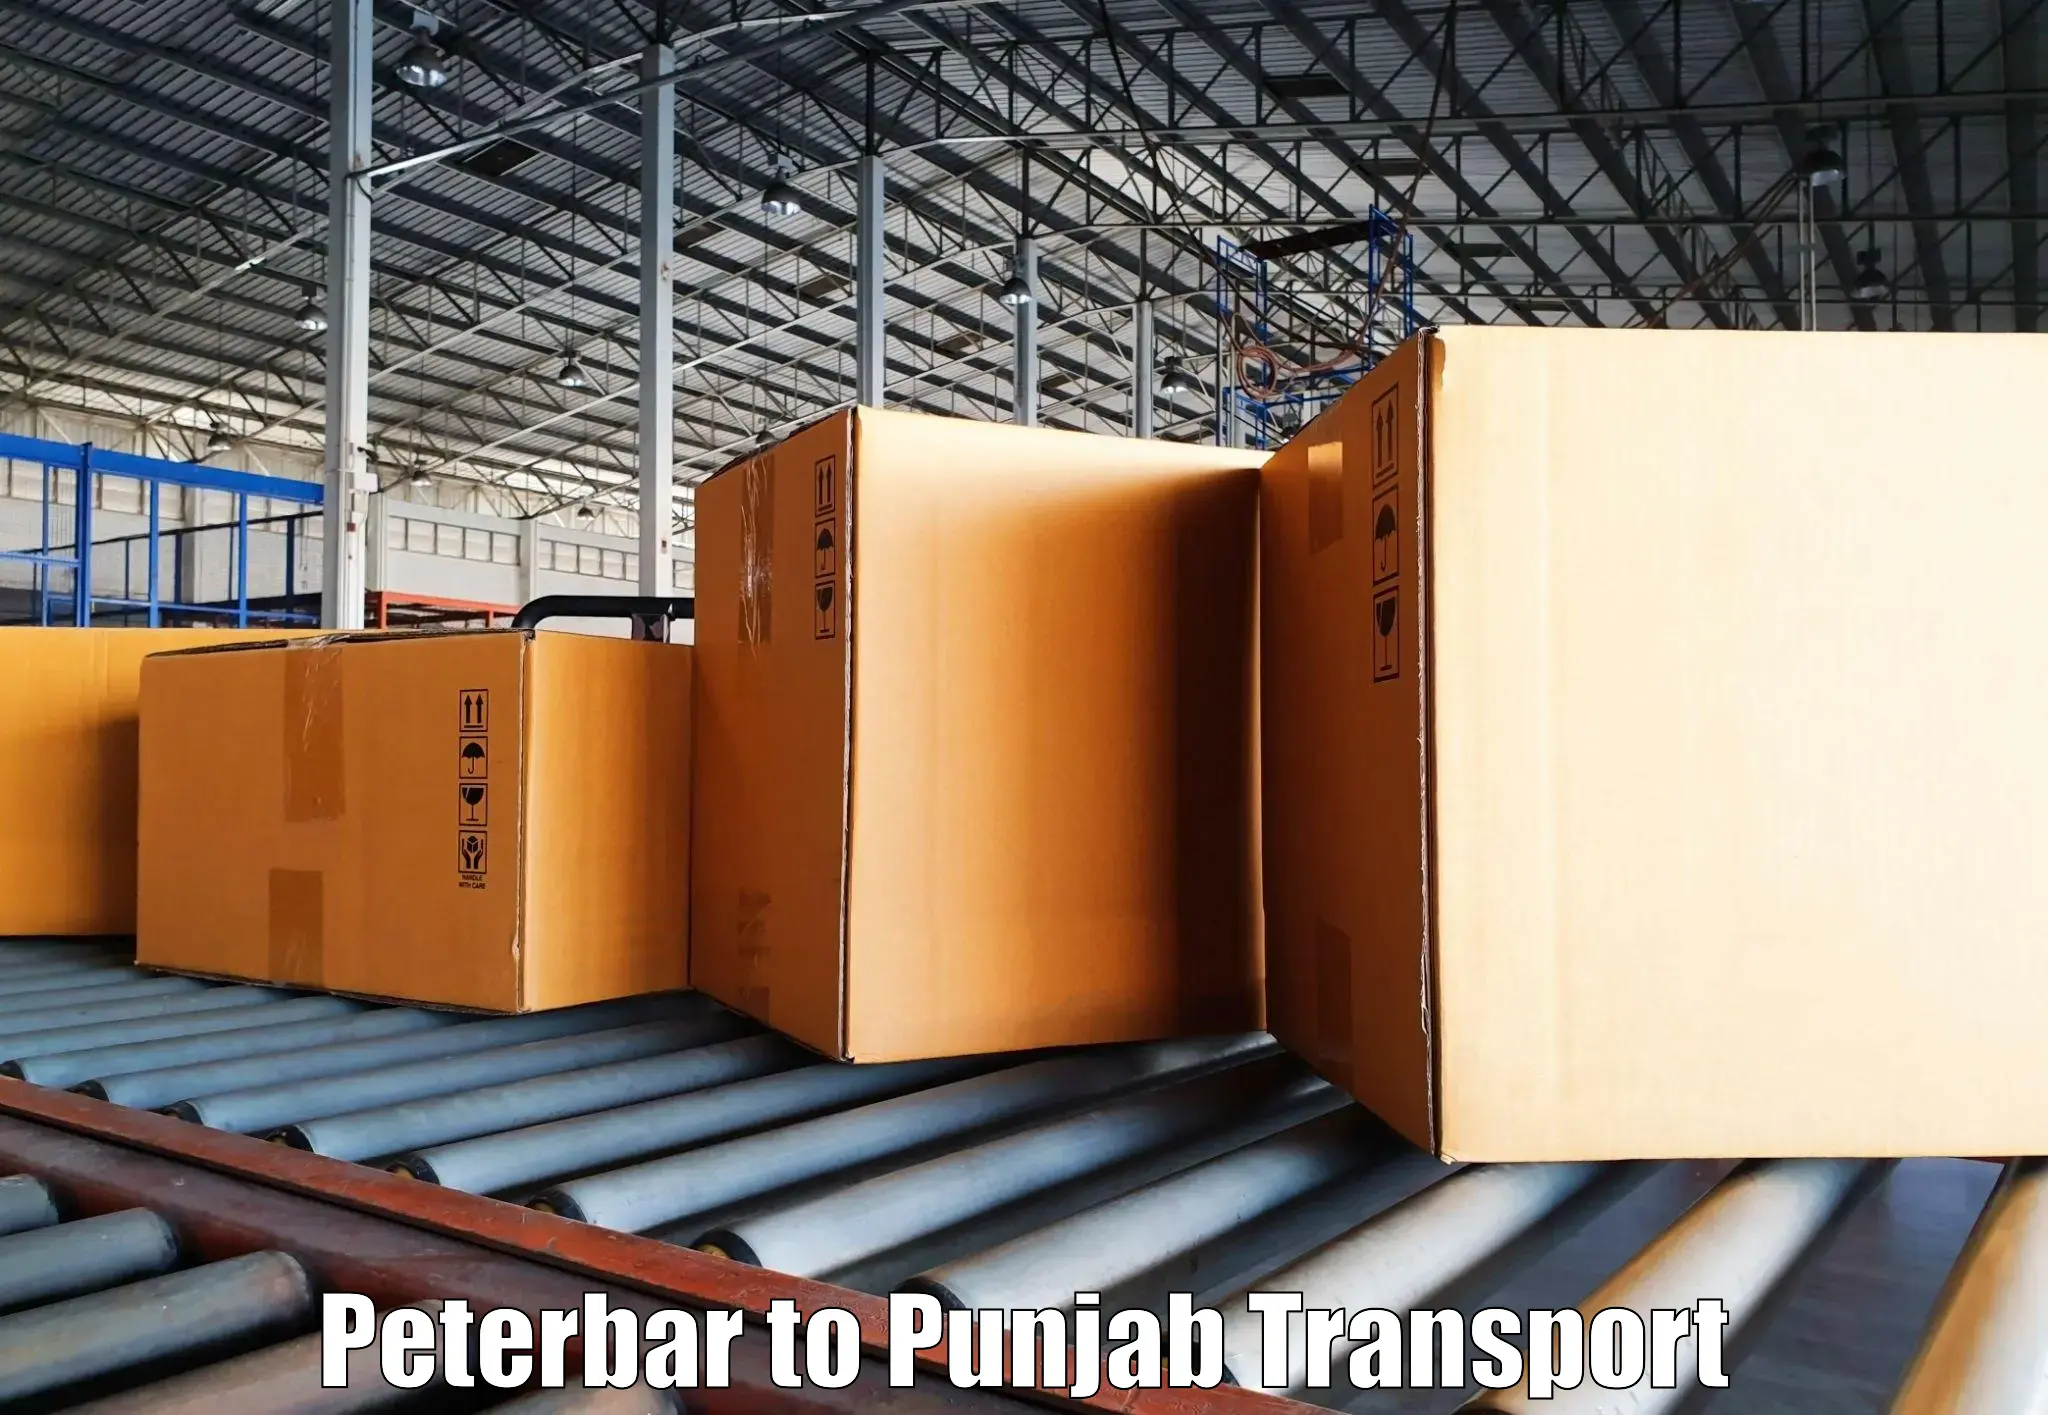 Transportation services Peterbar to Punjab